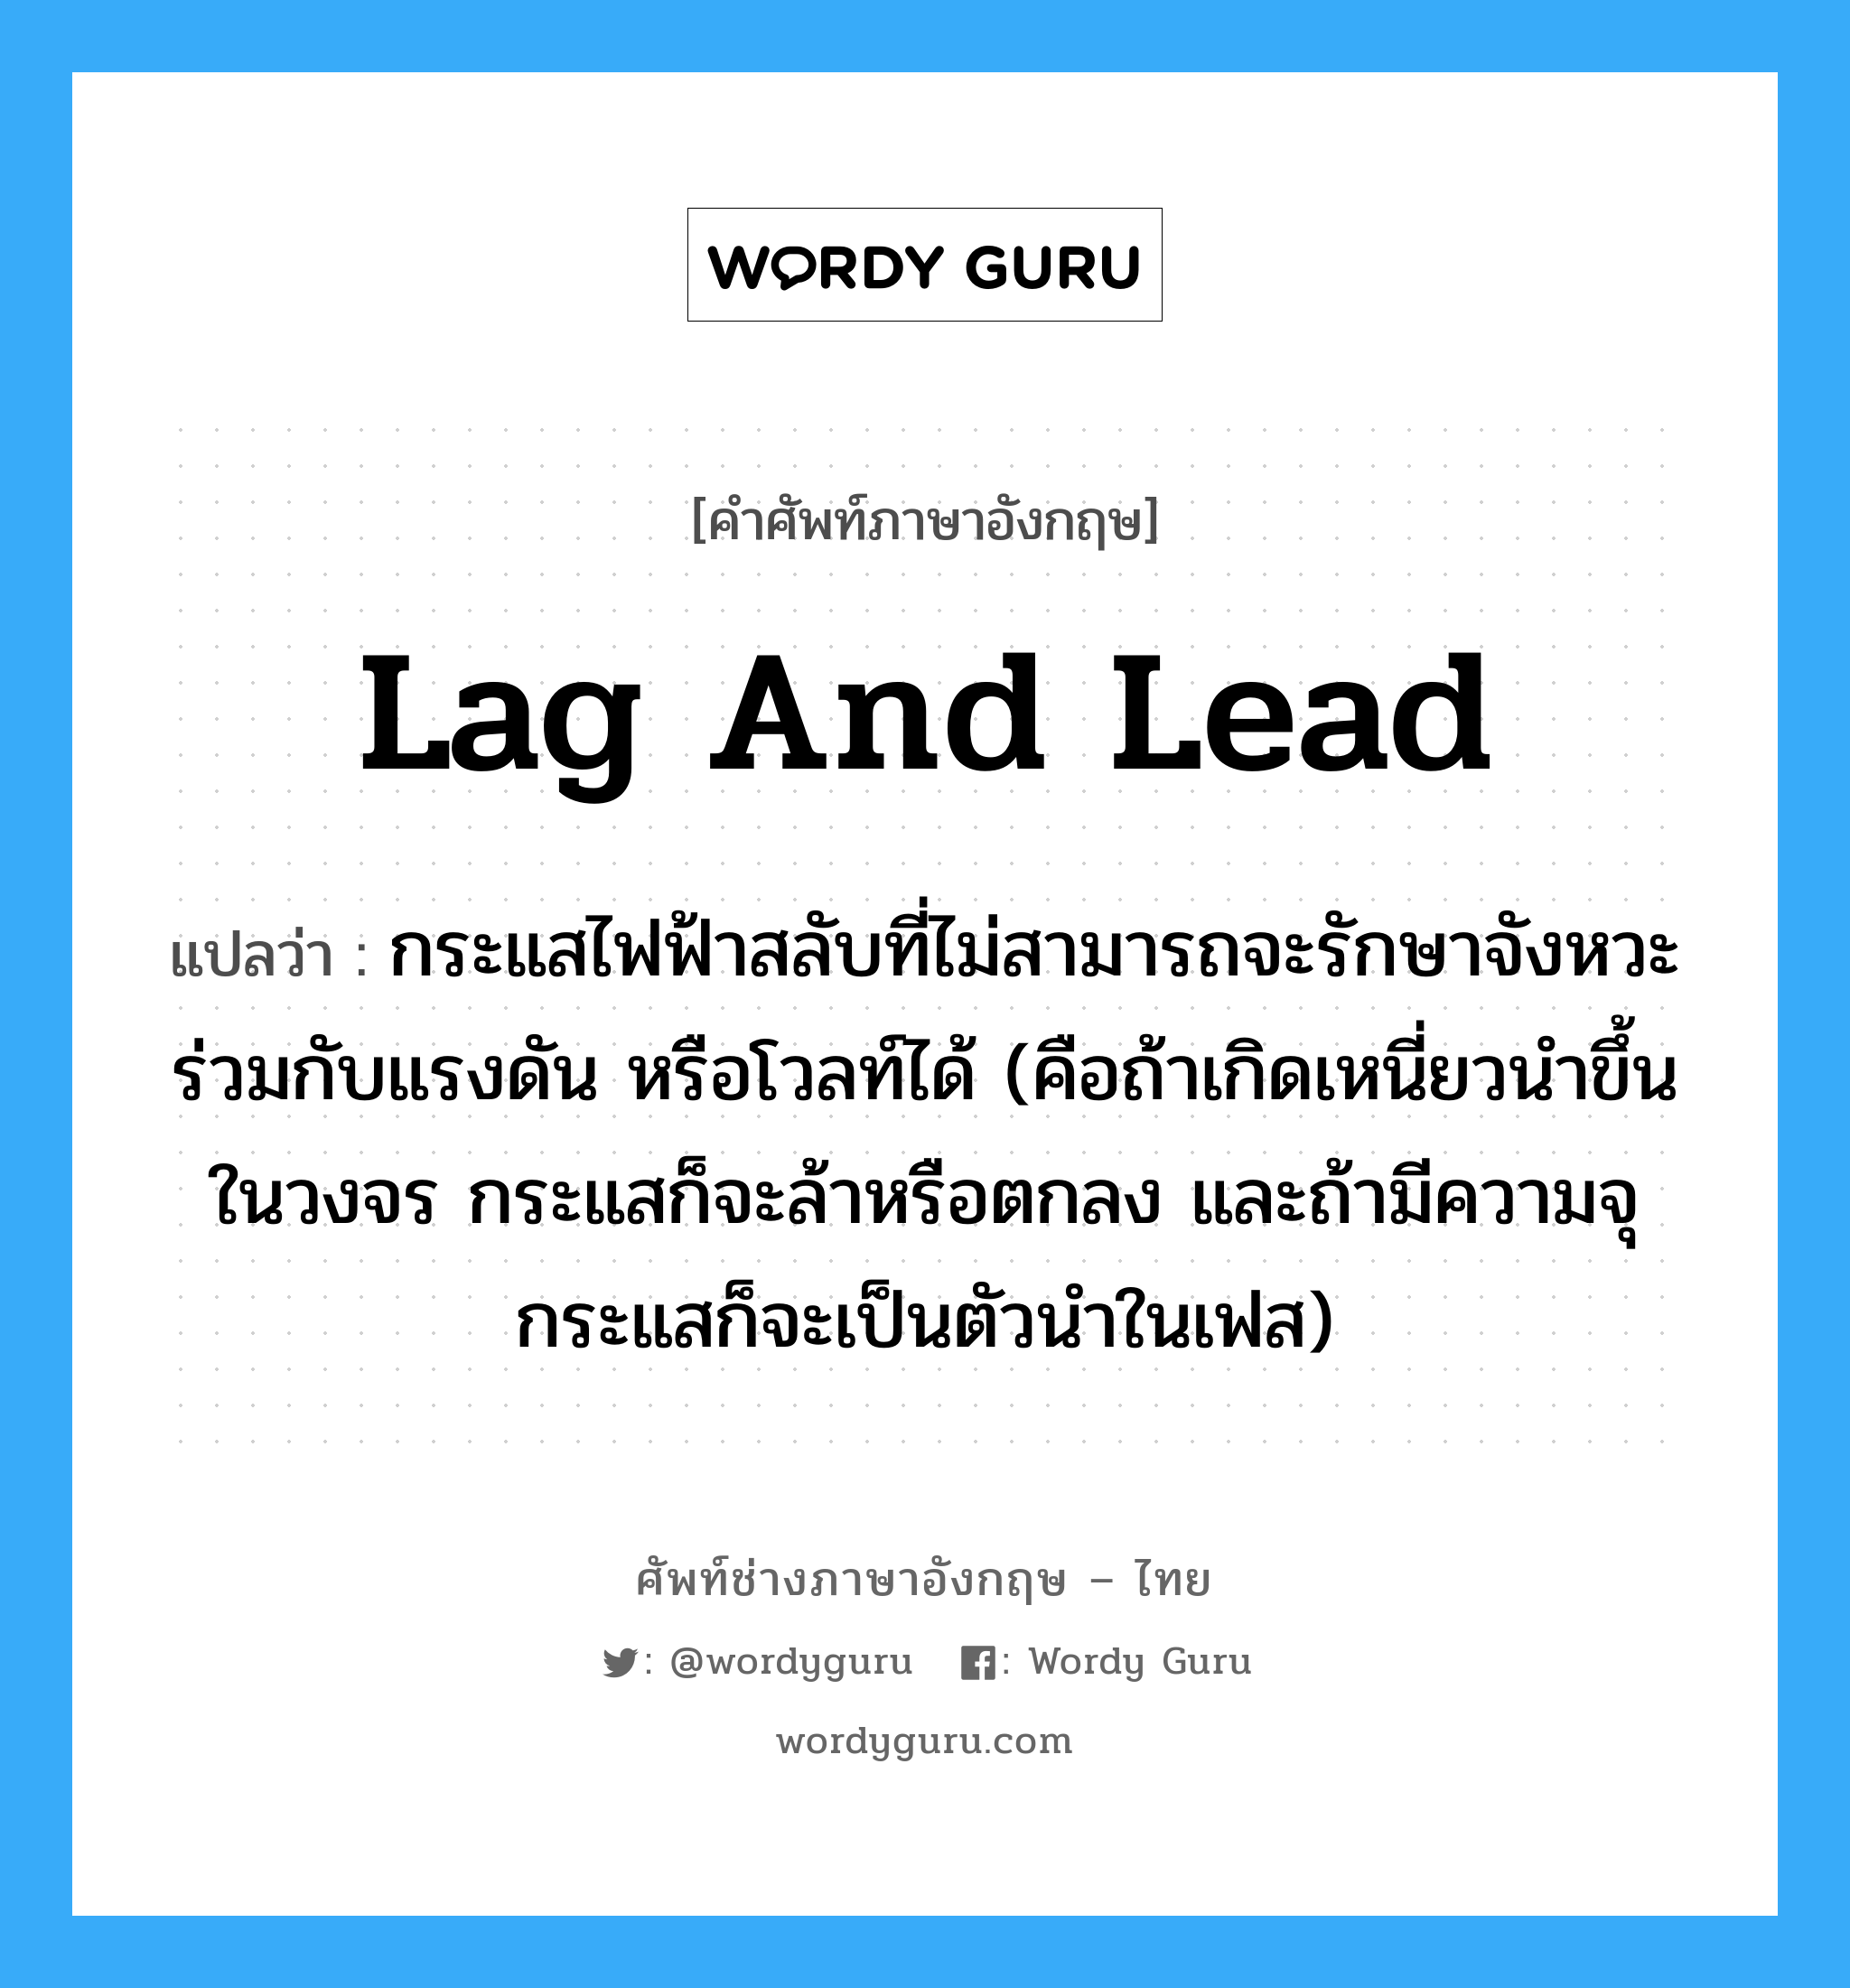 lag and lead แปลว่า?, คำศัพท์ช่างภาษาอังกฤษ - ไทย lag and lead คำศัพท์ภาษาอังกฤษ lag and lead แปลว่า กระแสไฟฟ้าสลับที่ไม่สามารถจะรักษาจังหวะร่วมกับแรงดัน หรือโวลท์ได้ (คือถ้าเกิดเหนี่ยวนำขึ้นในวงจร กระแสก็จะล้าหรือตกลง และถ้ามีความจุ กระแสก็จะเป็นตัวนำในเฟส)